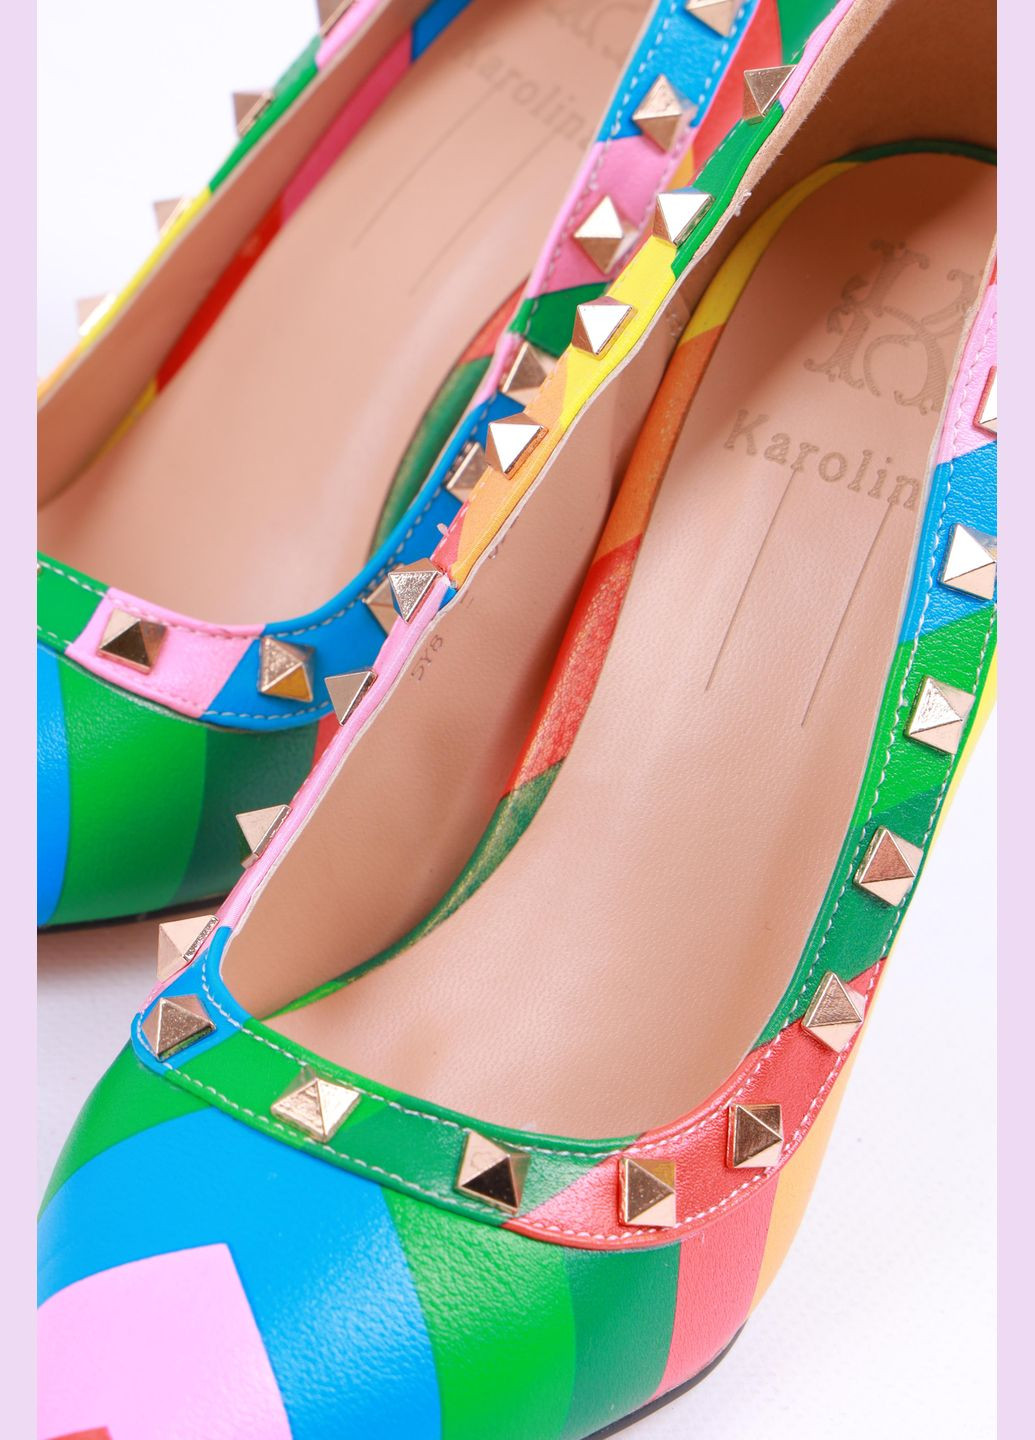 Туфли женские разноцветные Let's Shop